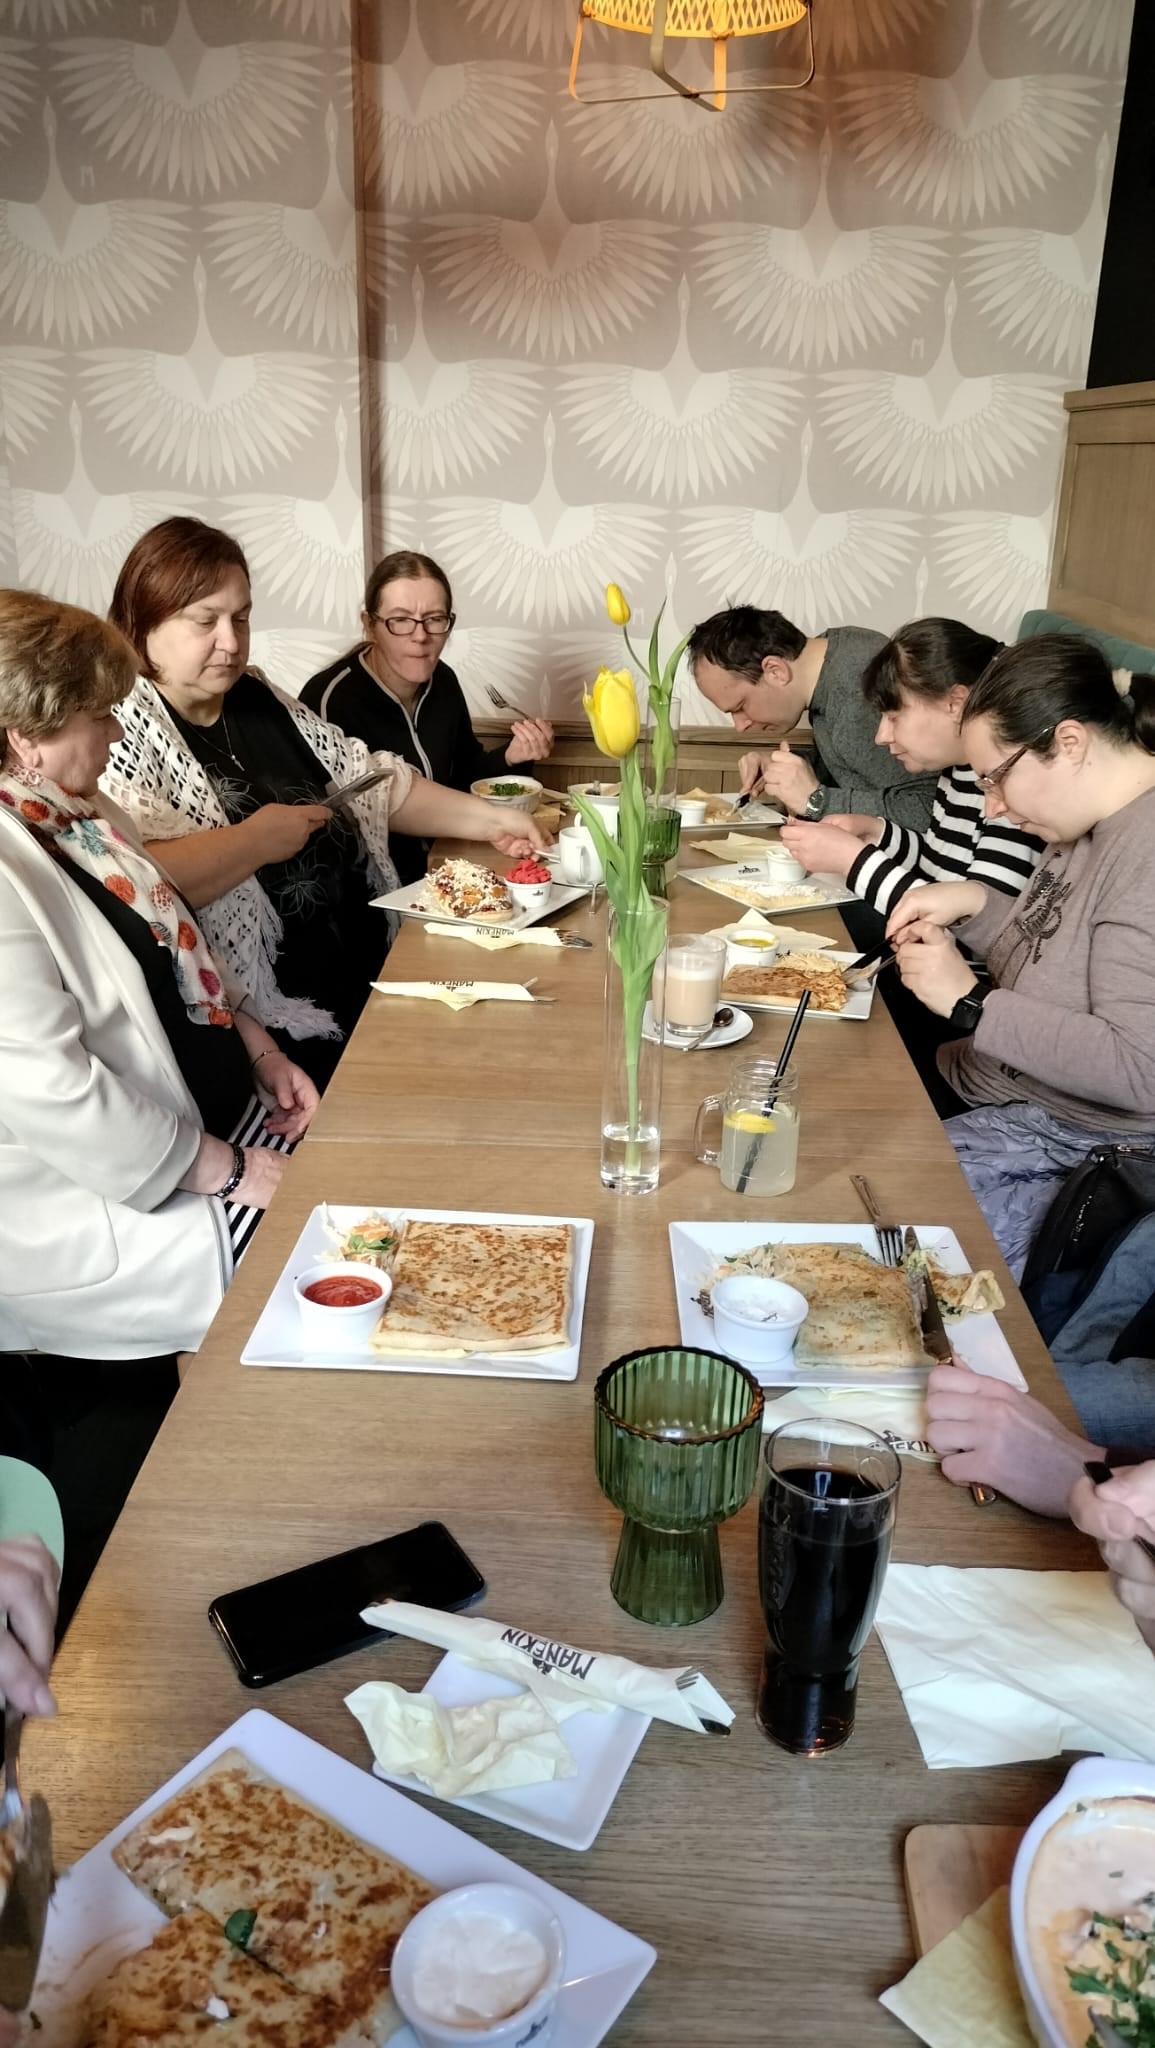 Grupa osób przy stole podczas konsumpcji posiłków. Na stole jedzenie oraz kwiaty. 